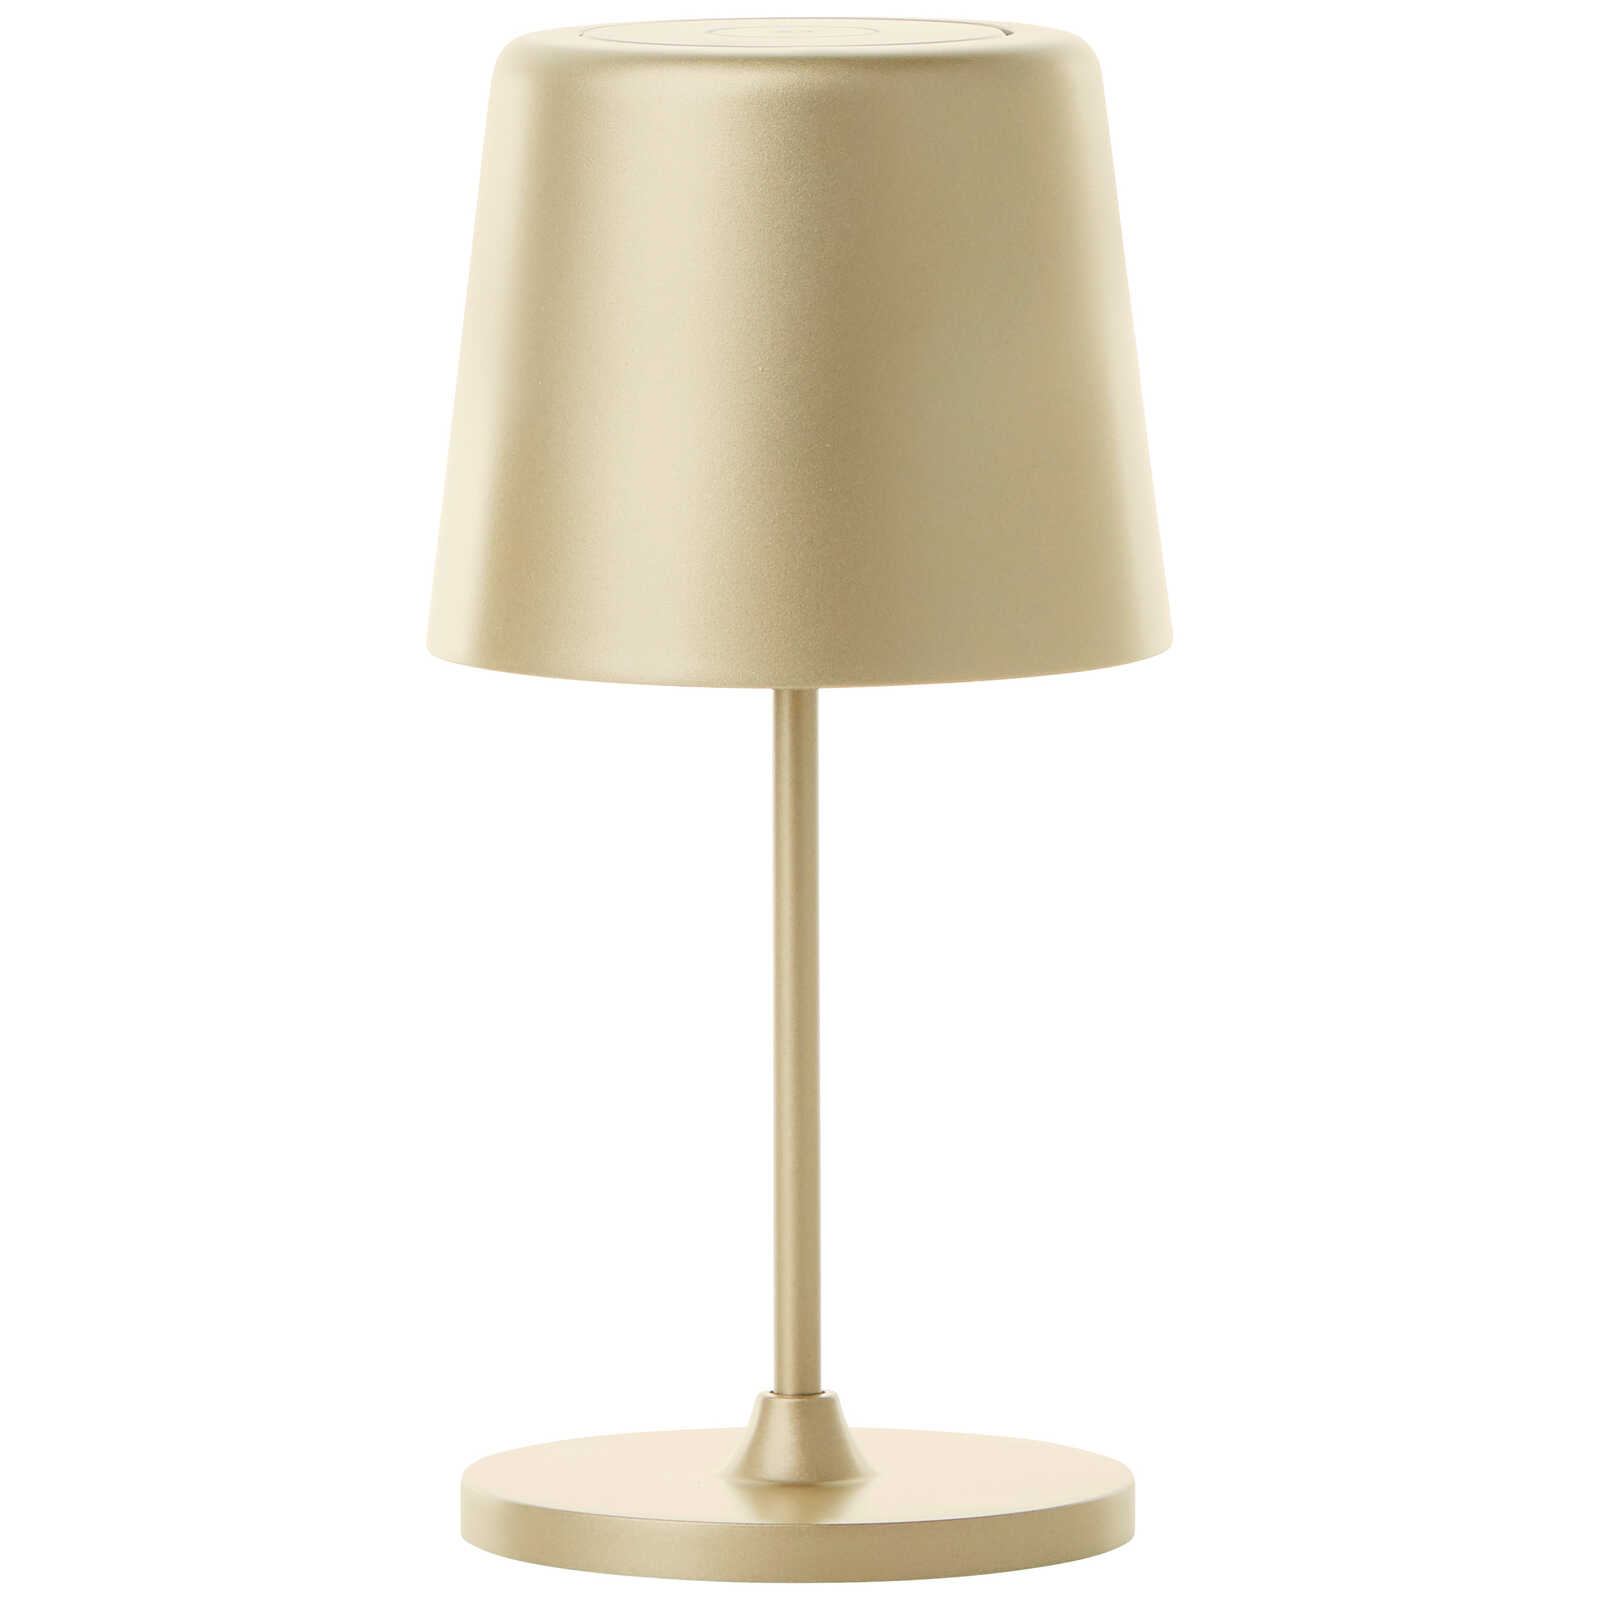             Metalen tafellamp - Cosy 2 - Goud
        